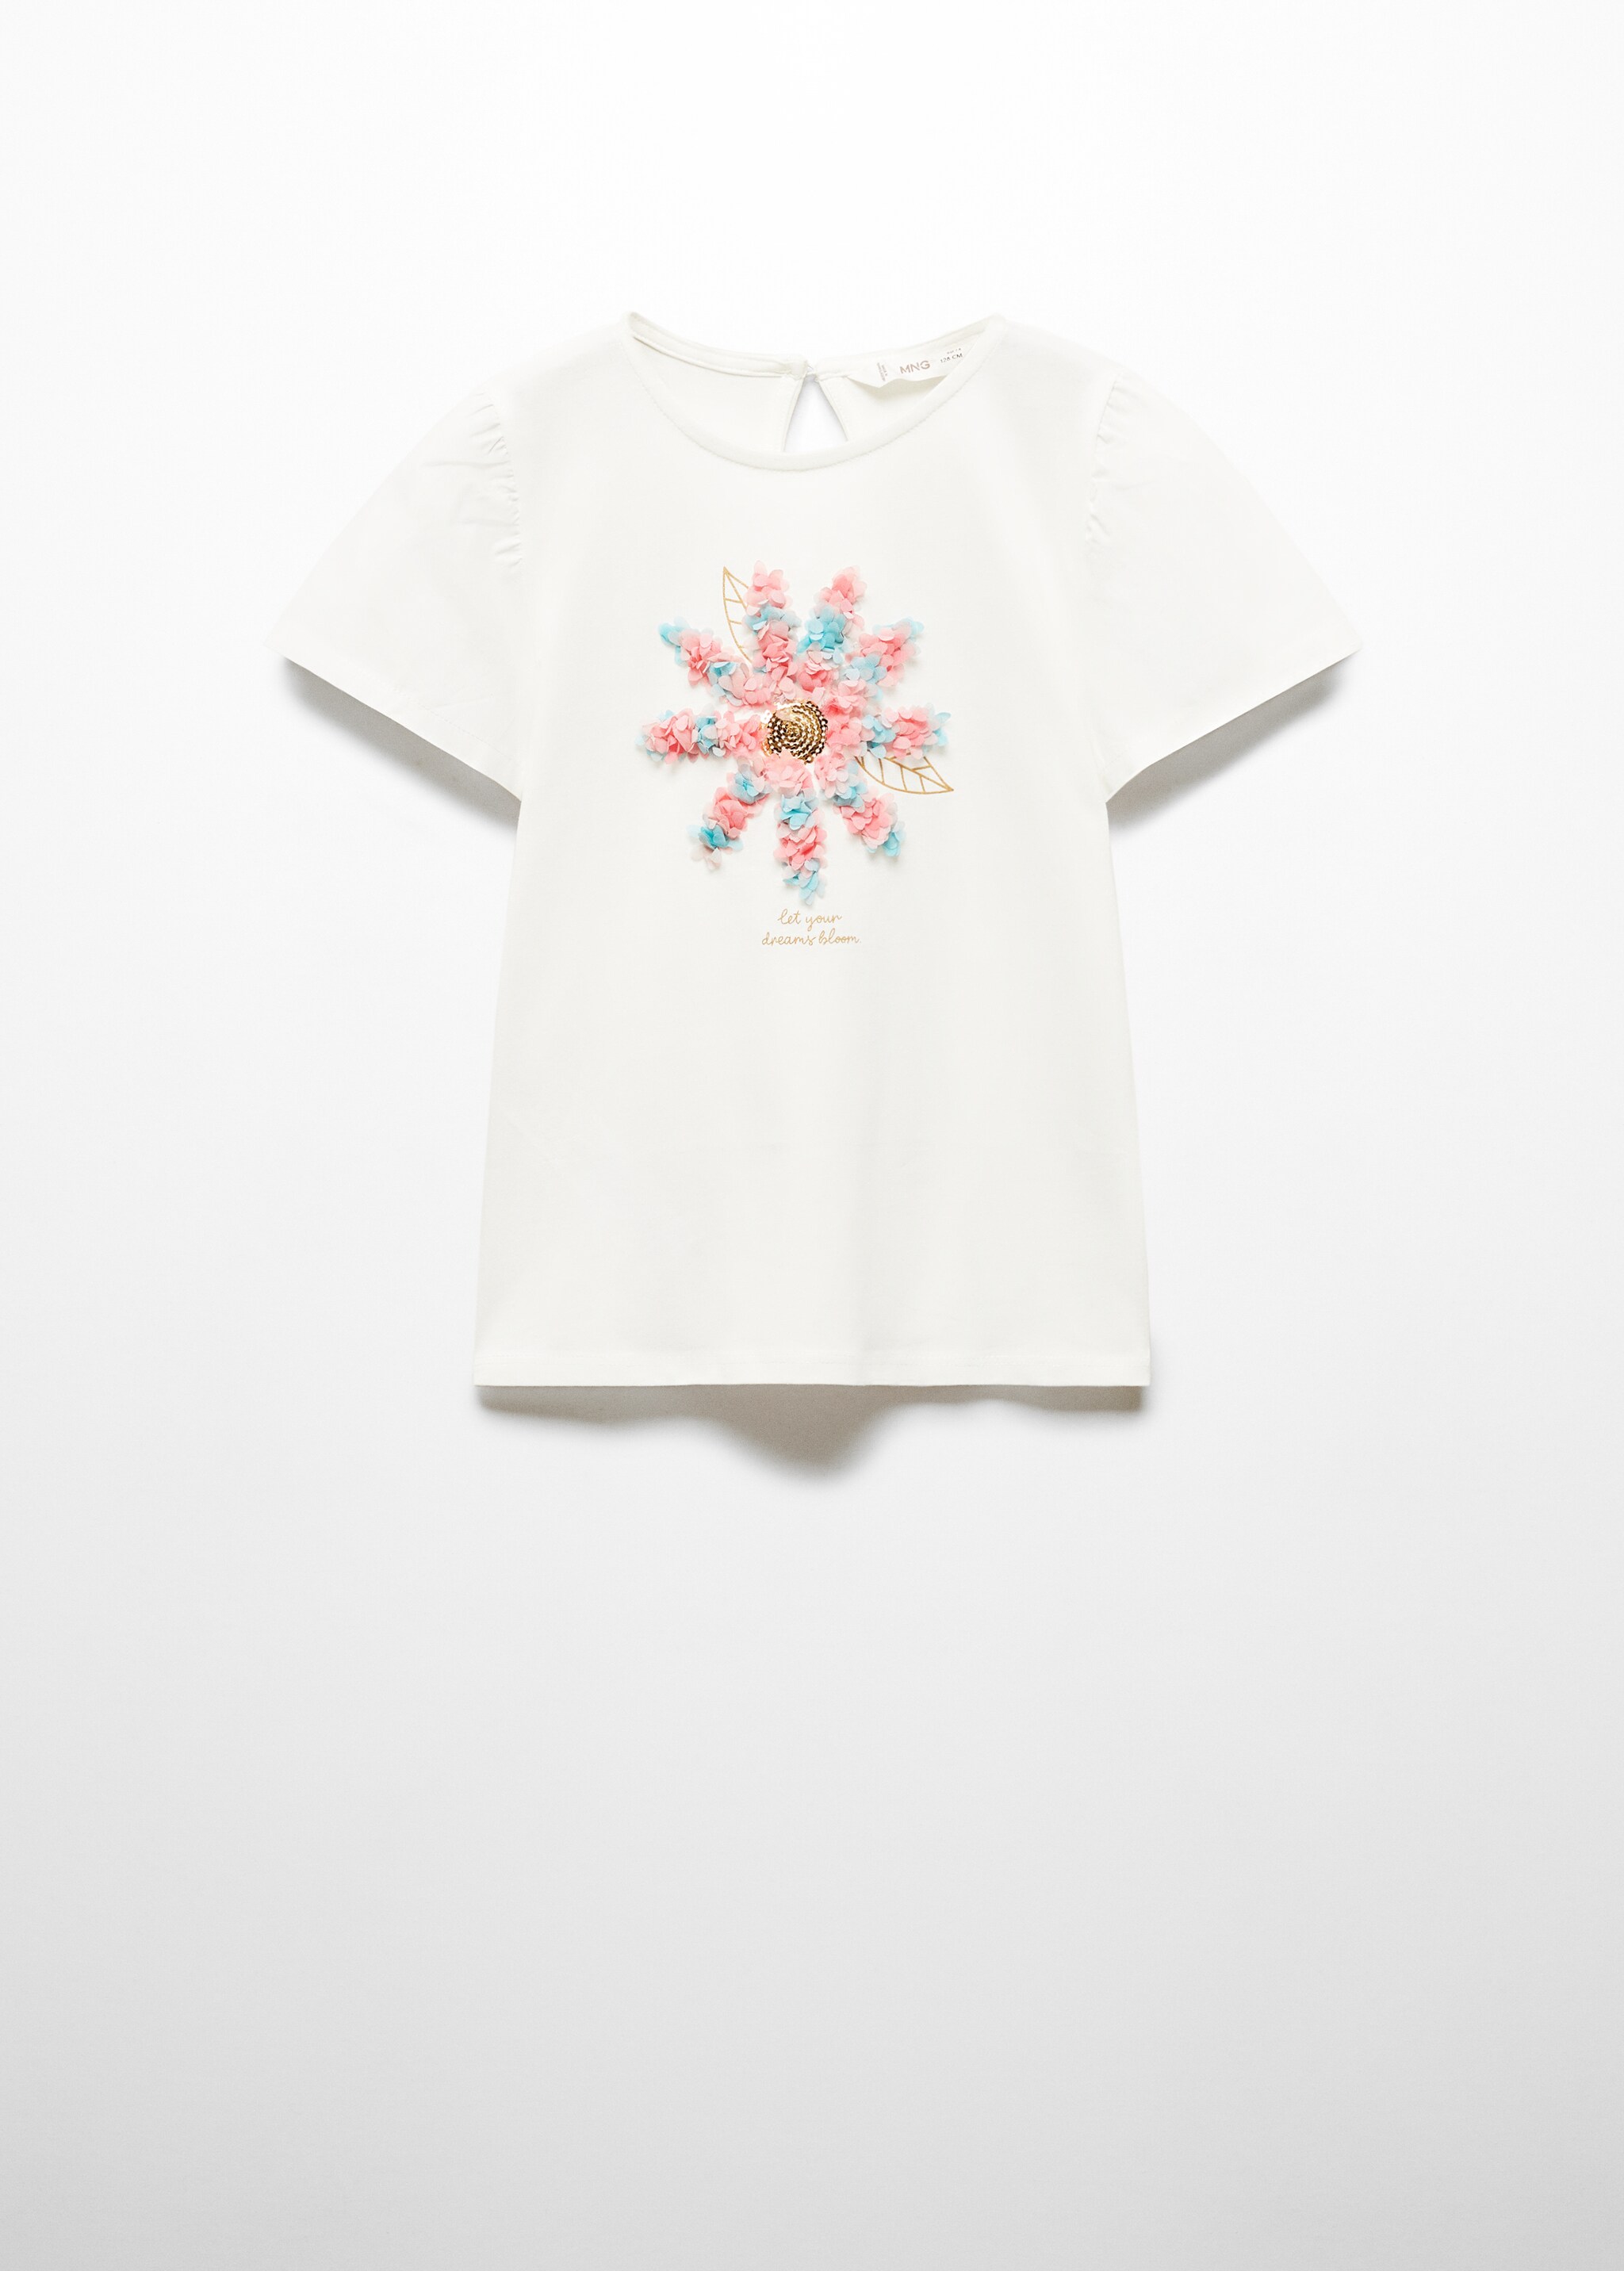 Camiseta flores relieve - Artículo sin modelo